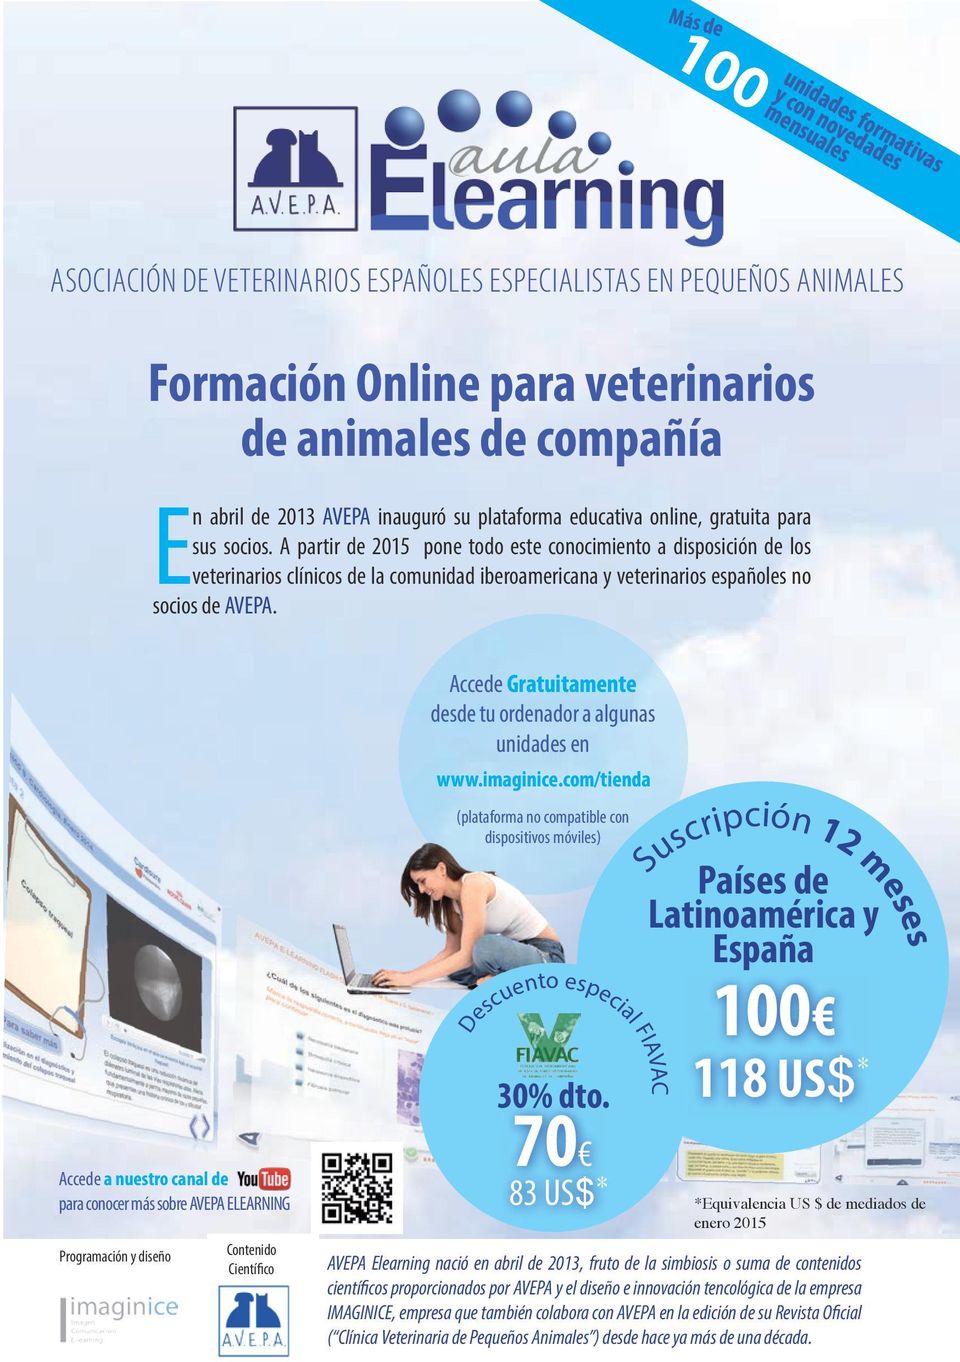 A partir de 2015 pone todo este conocimiento a disposición de los veterinarios clínicos de la comunidad iberoamericana y veterinarios españoles no socios de AVEPA.